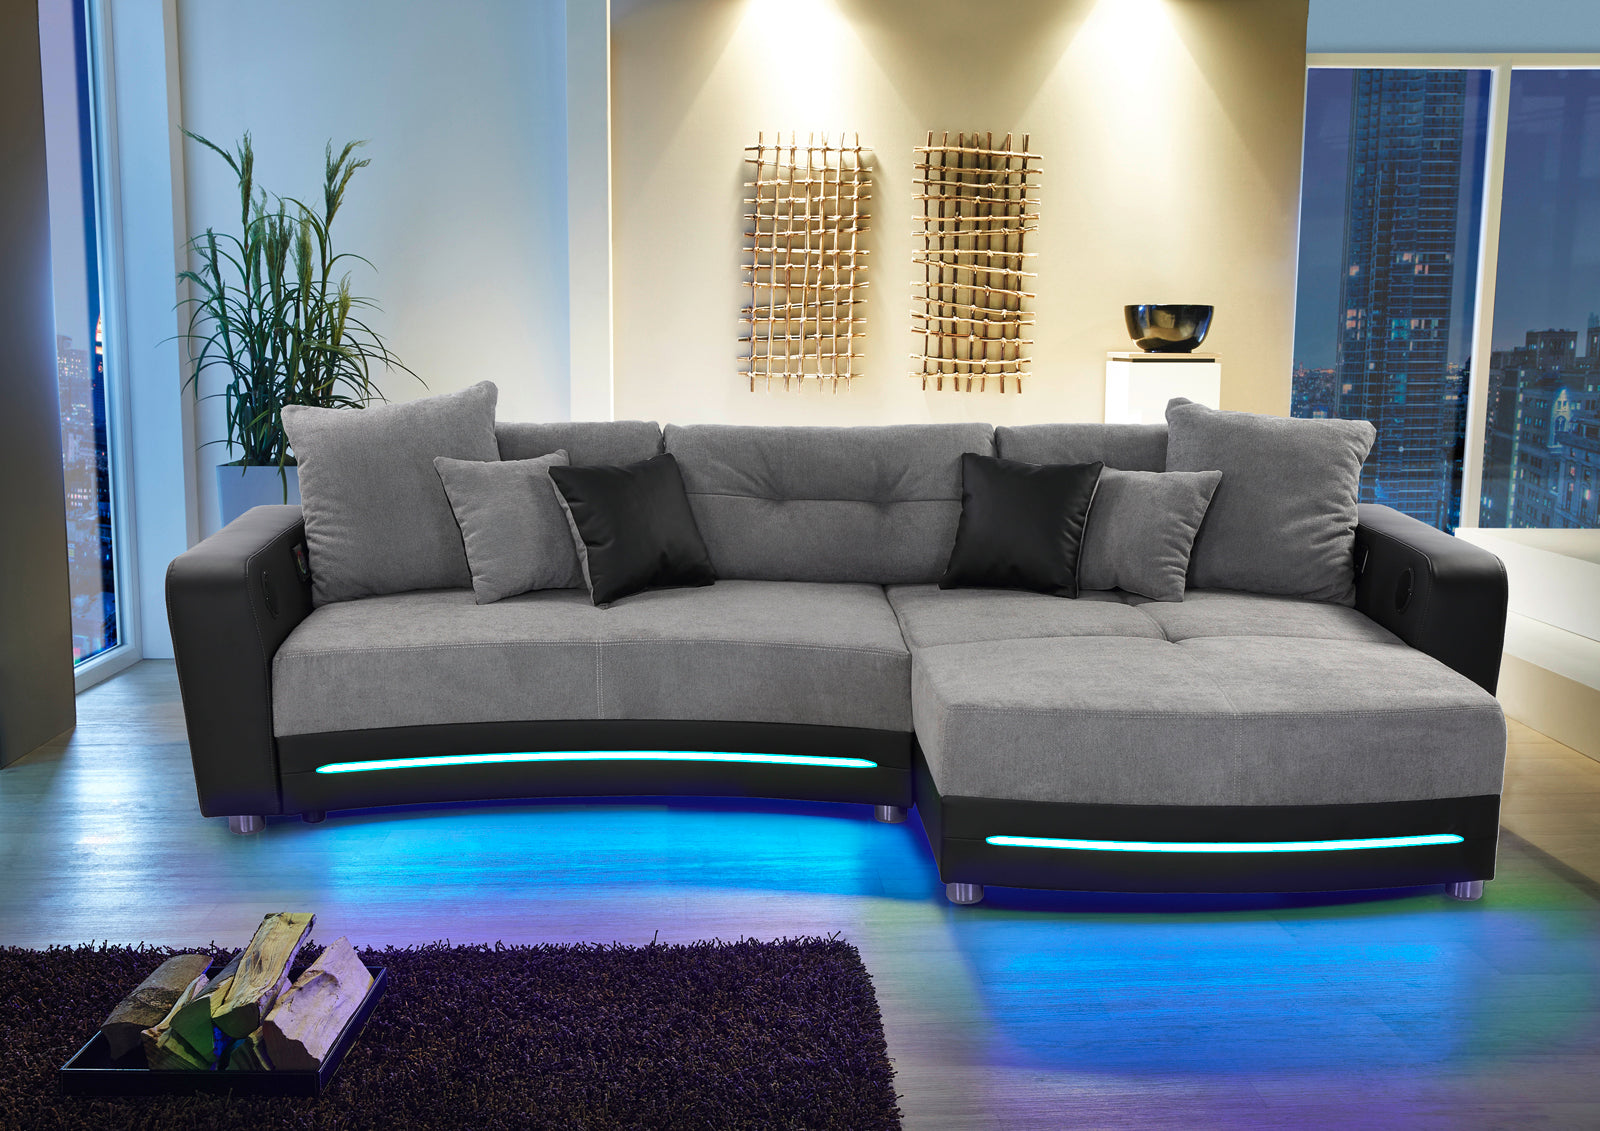 Fekete-szürke kanapé RGB világítással, hangszóróval és bluetooth kapcsolattal.